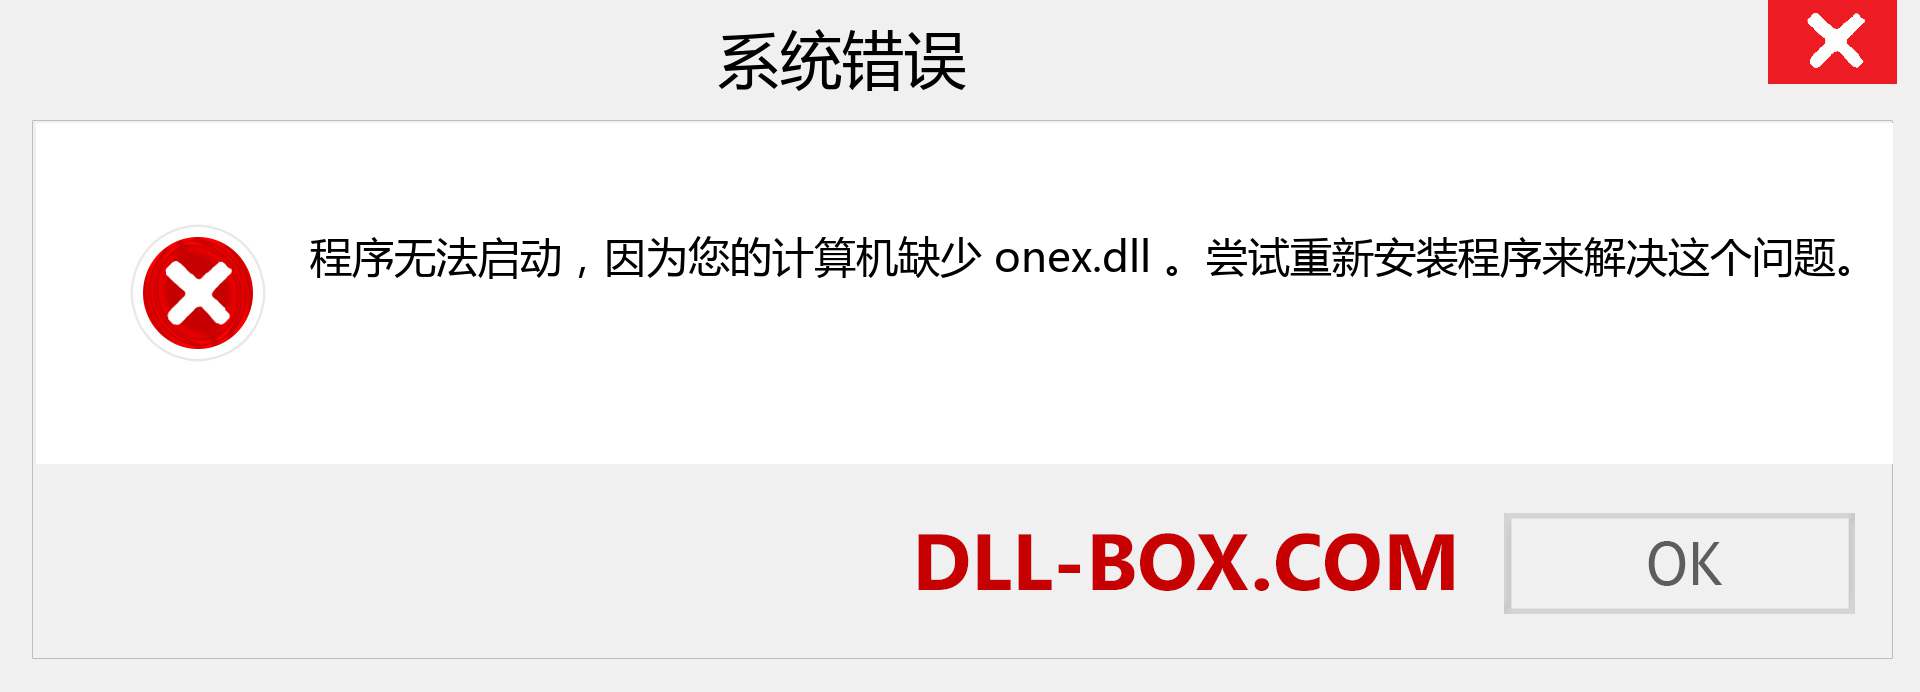 onex.dll 文件丢失？。 适用于 Windows 7、8、10 的下载 - 修复 Windows、照片、图像上的 onex dll 丢失错误